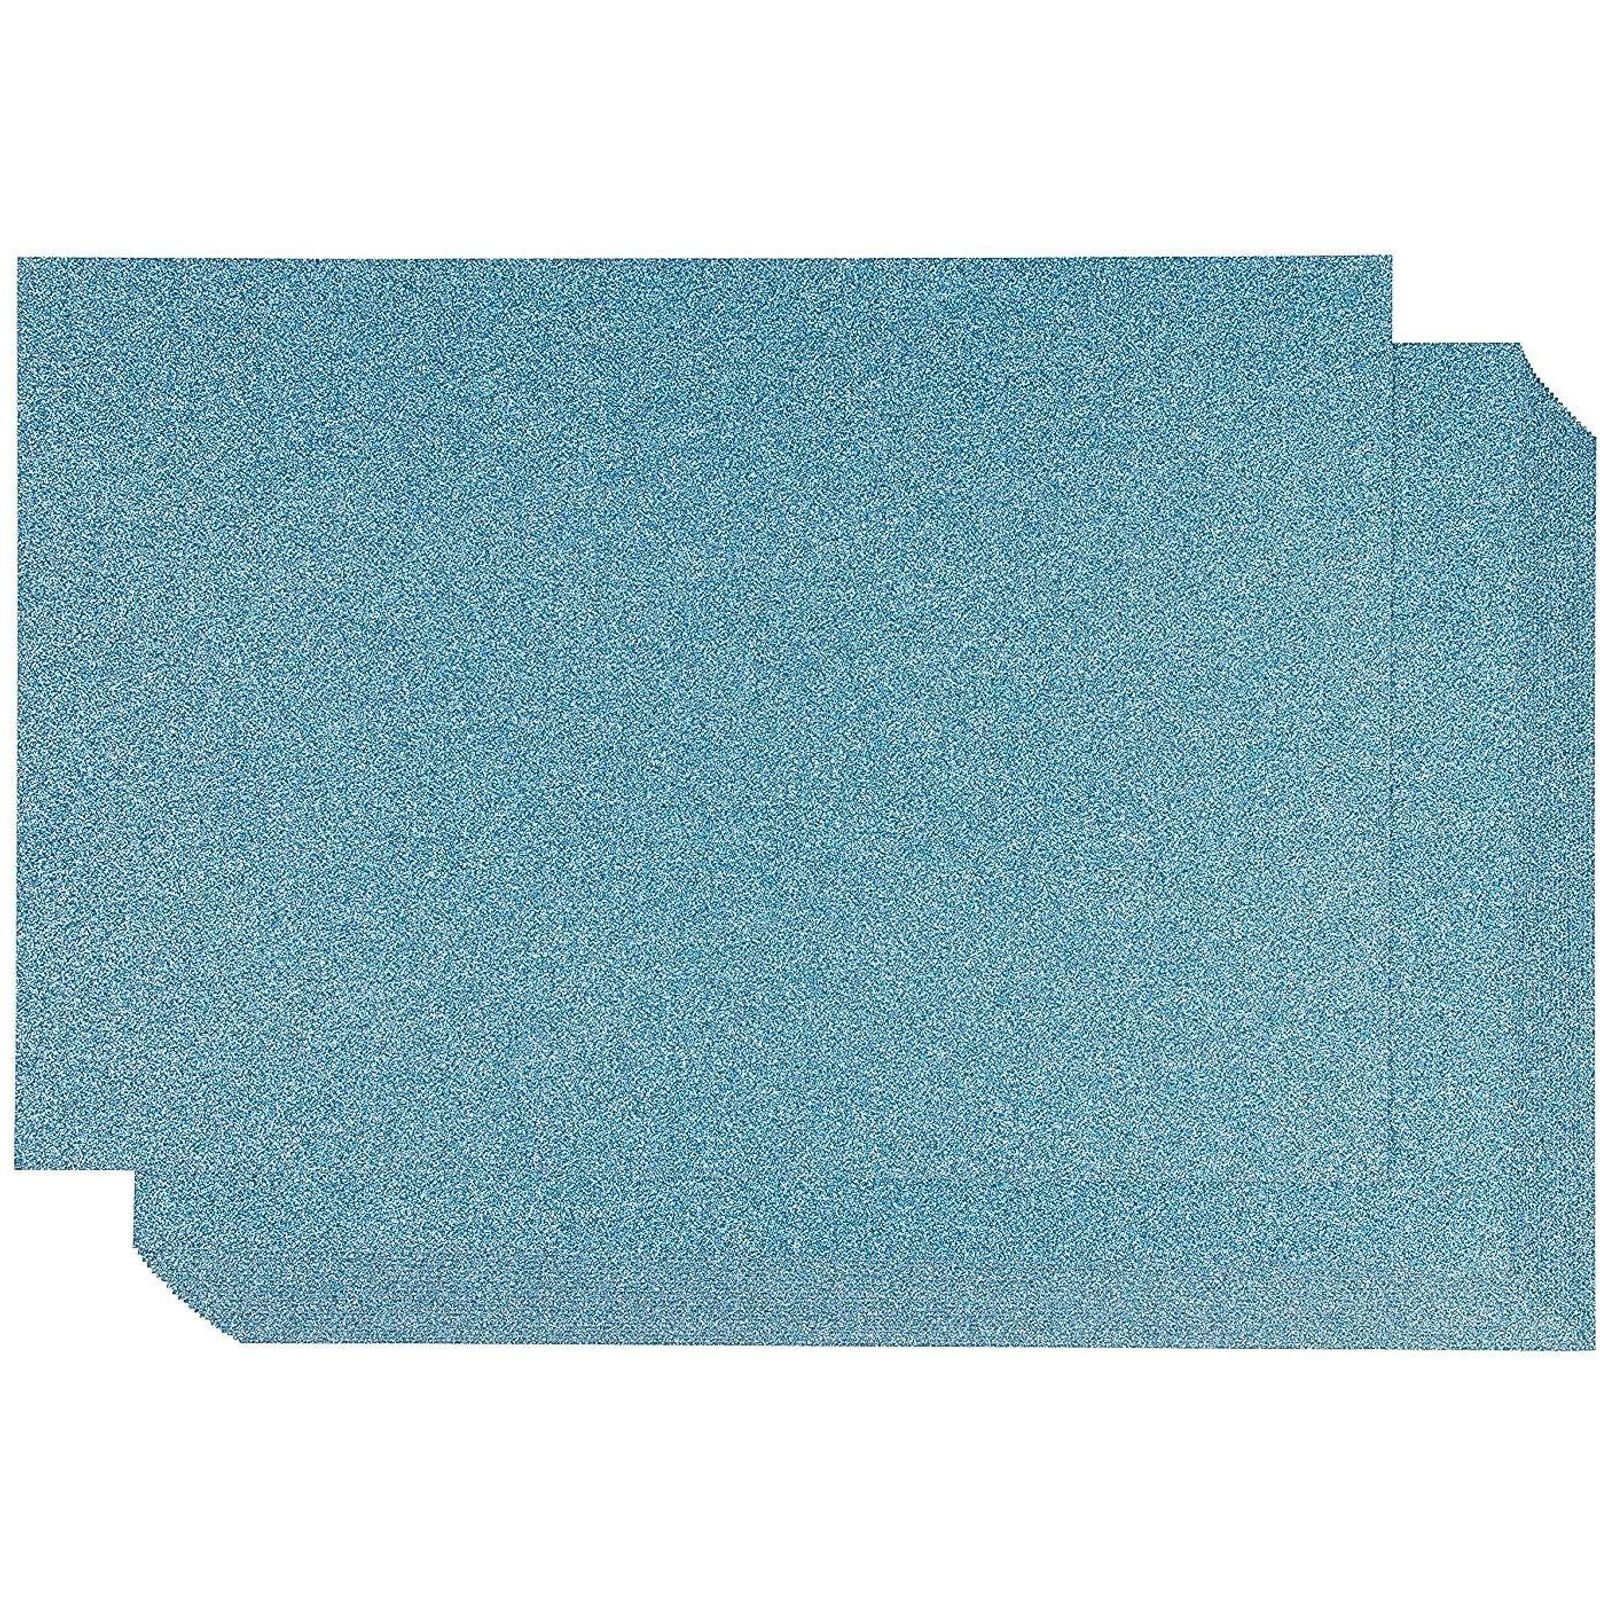 Blue Glitter Cardstock (10 Sheets, 300gsm) Blue Cardstock 12x12 Cardstock Paper Colored Cardstock (Blue)